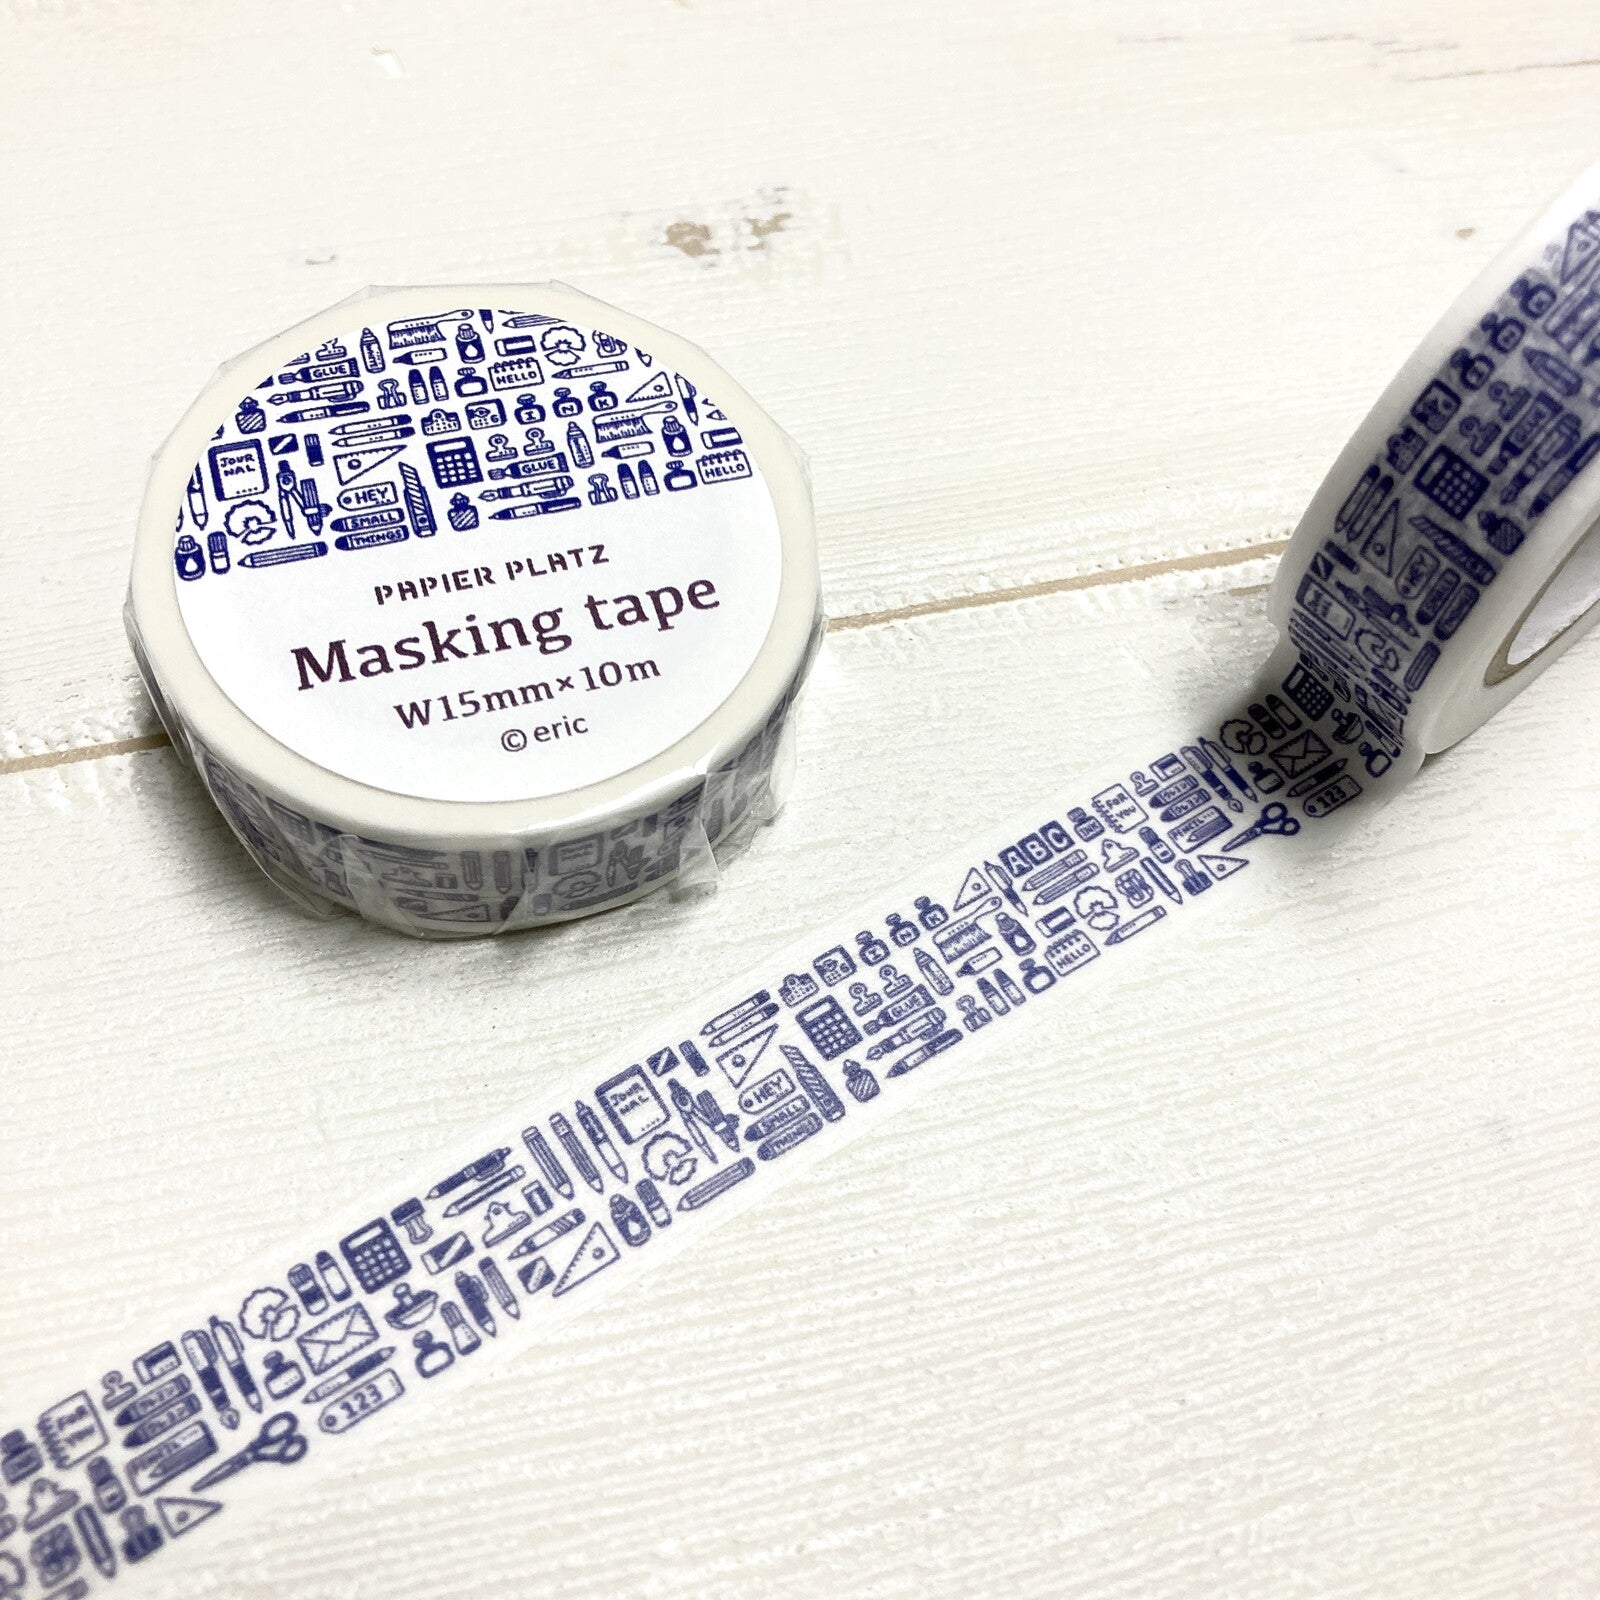 Papier Platz White & Blue Stationery washi tape - Paper Kooka Australia